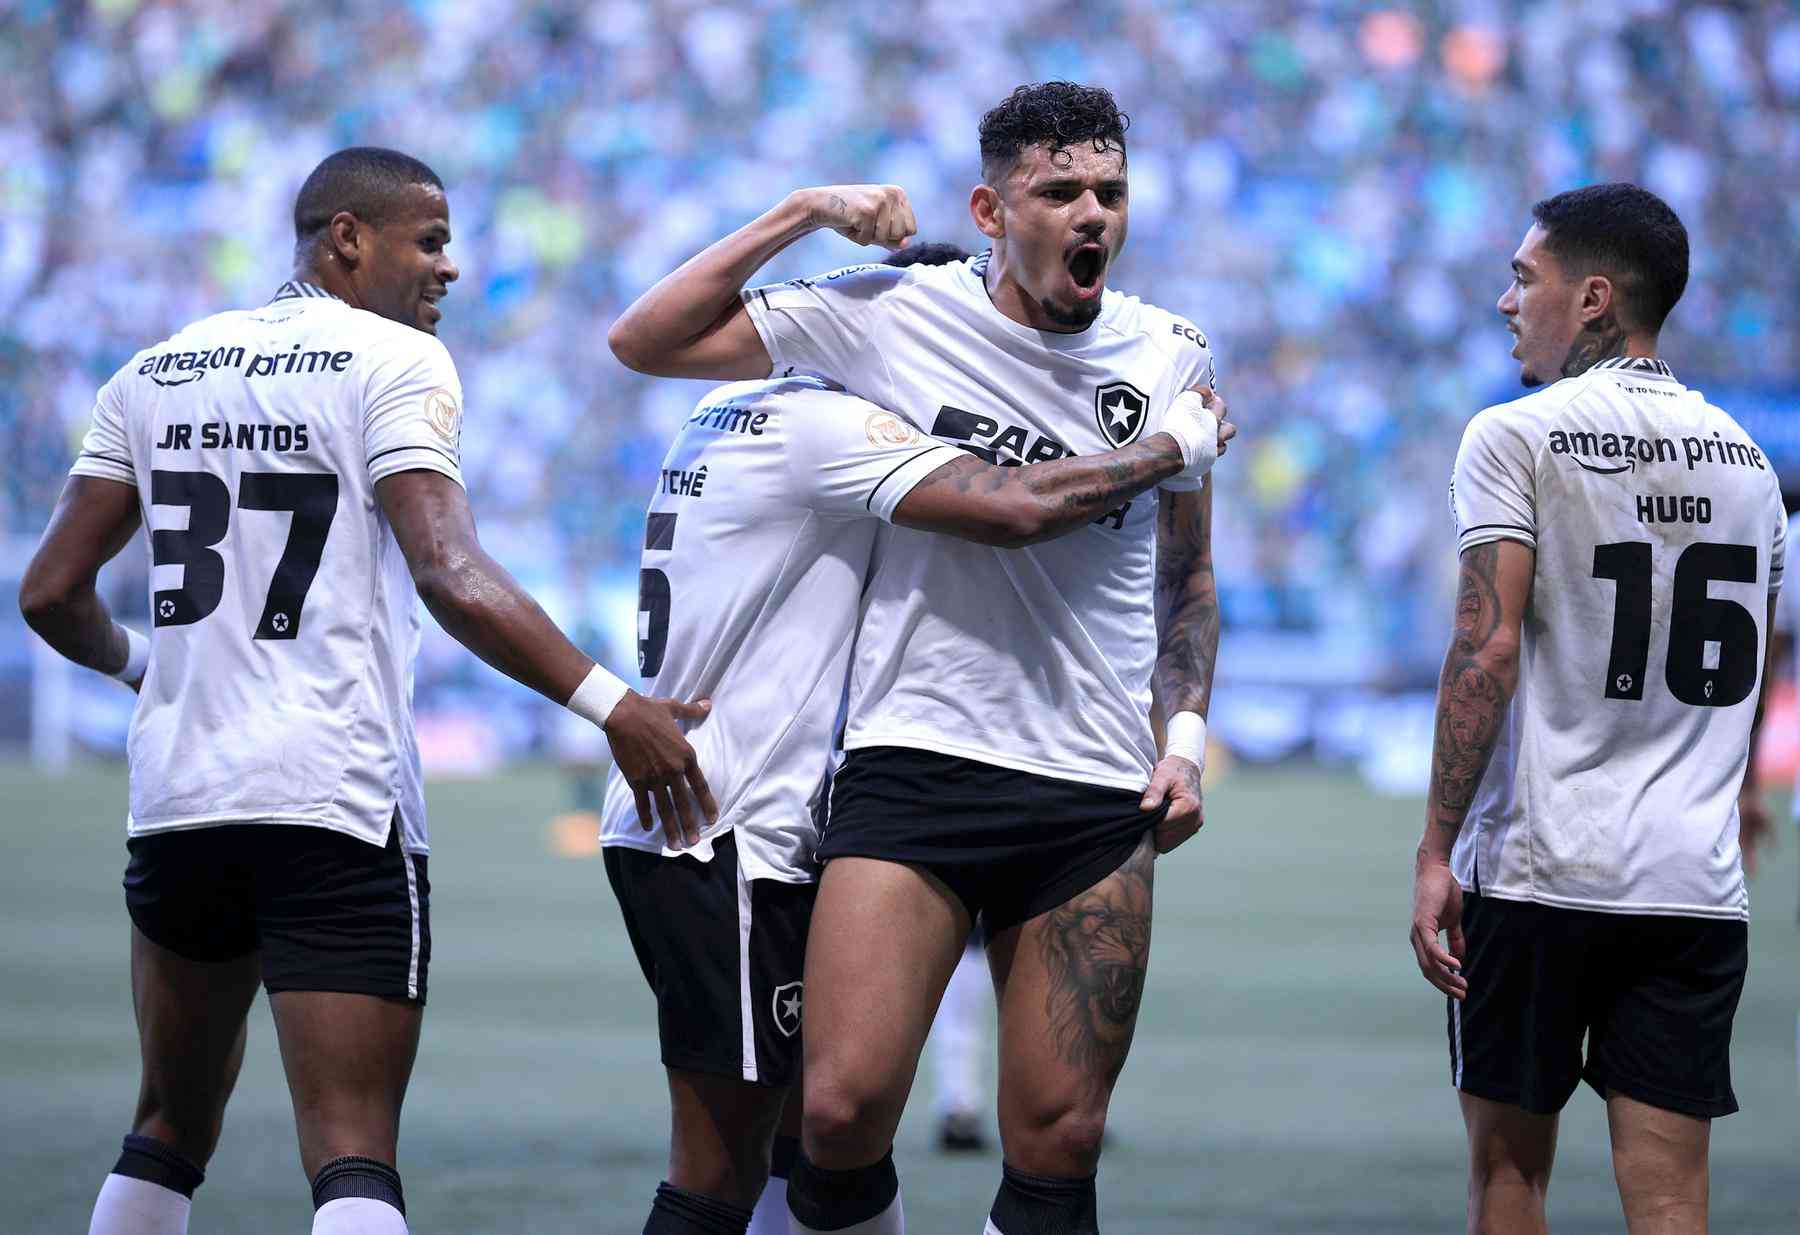 O Melhor Corinthians de Todos os Tempos – Bola Clássica